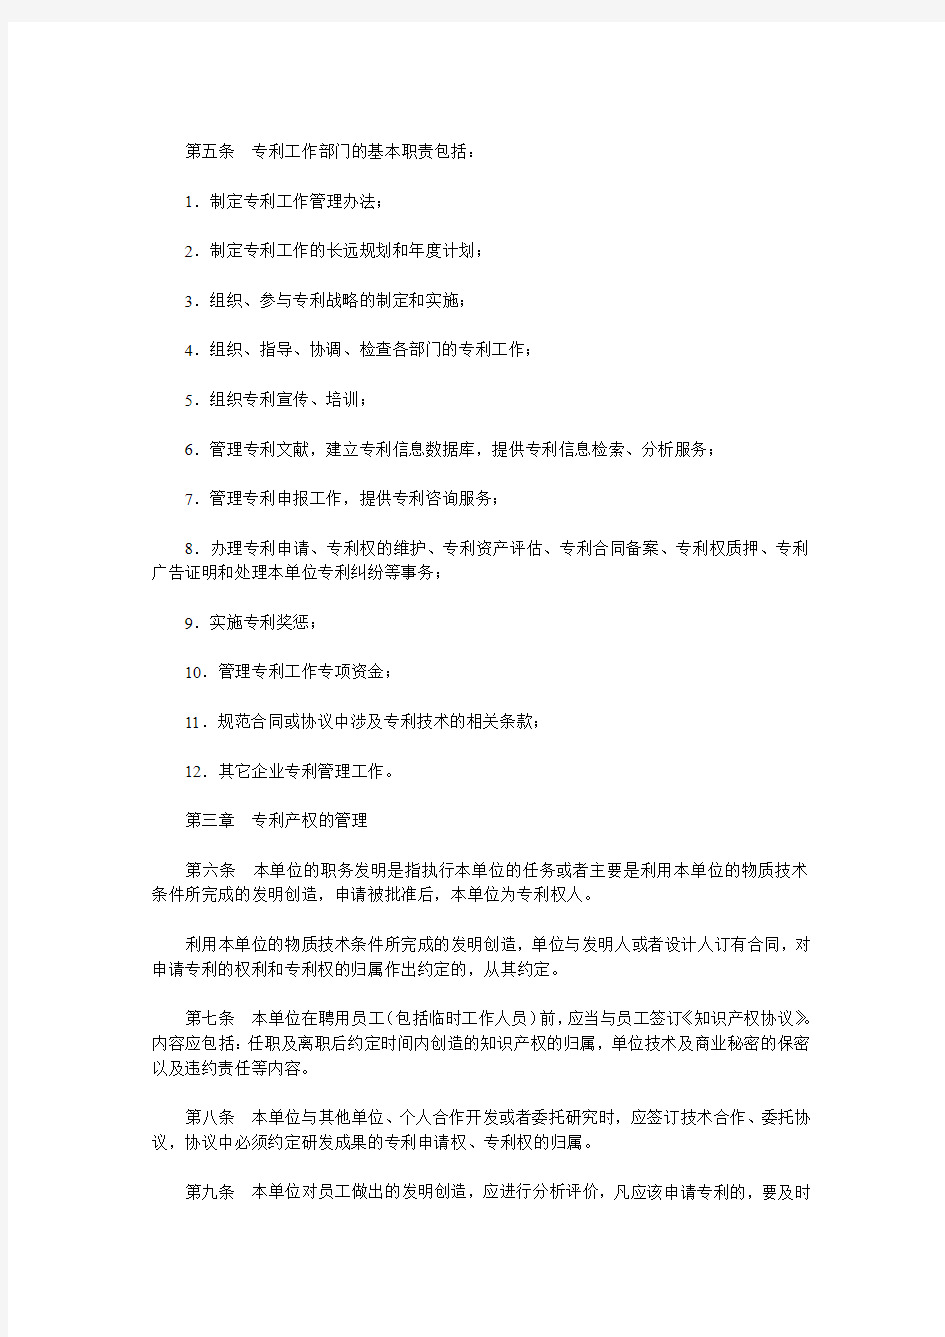 天津市企业专利管理制度制定指南(试行)